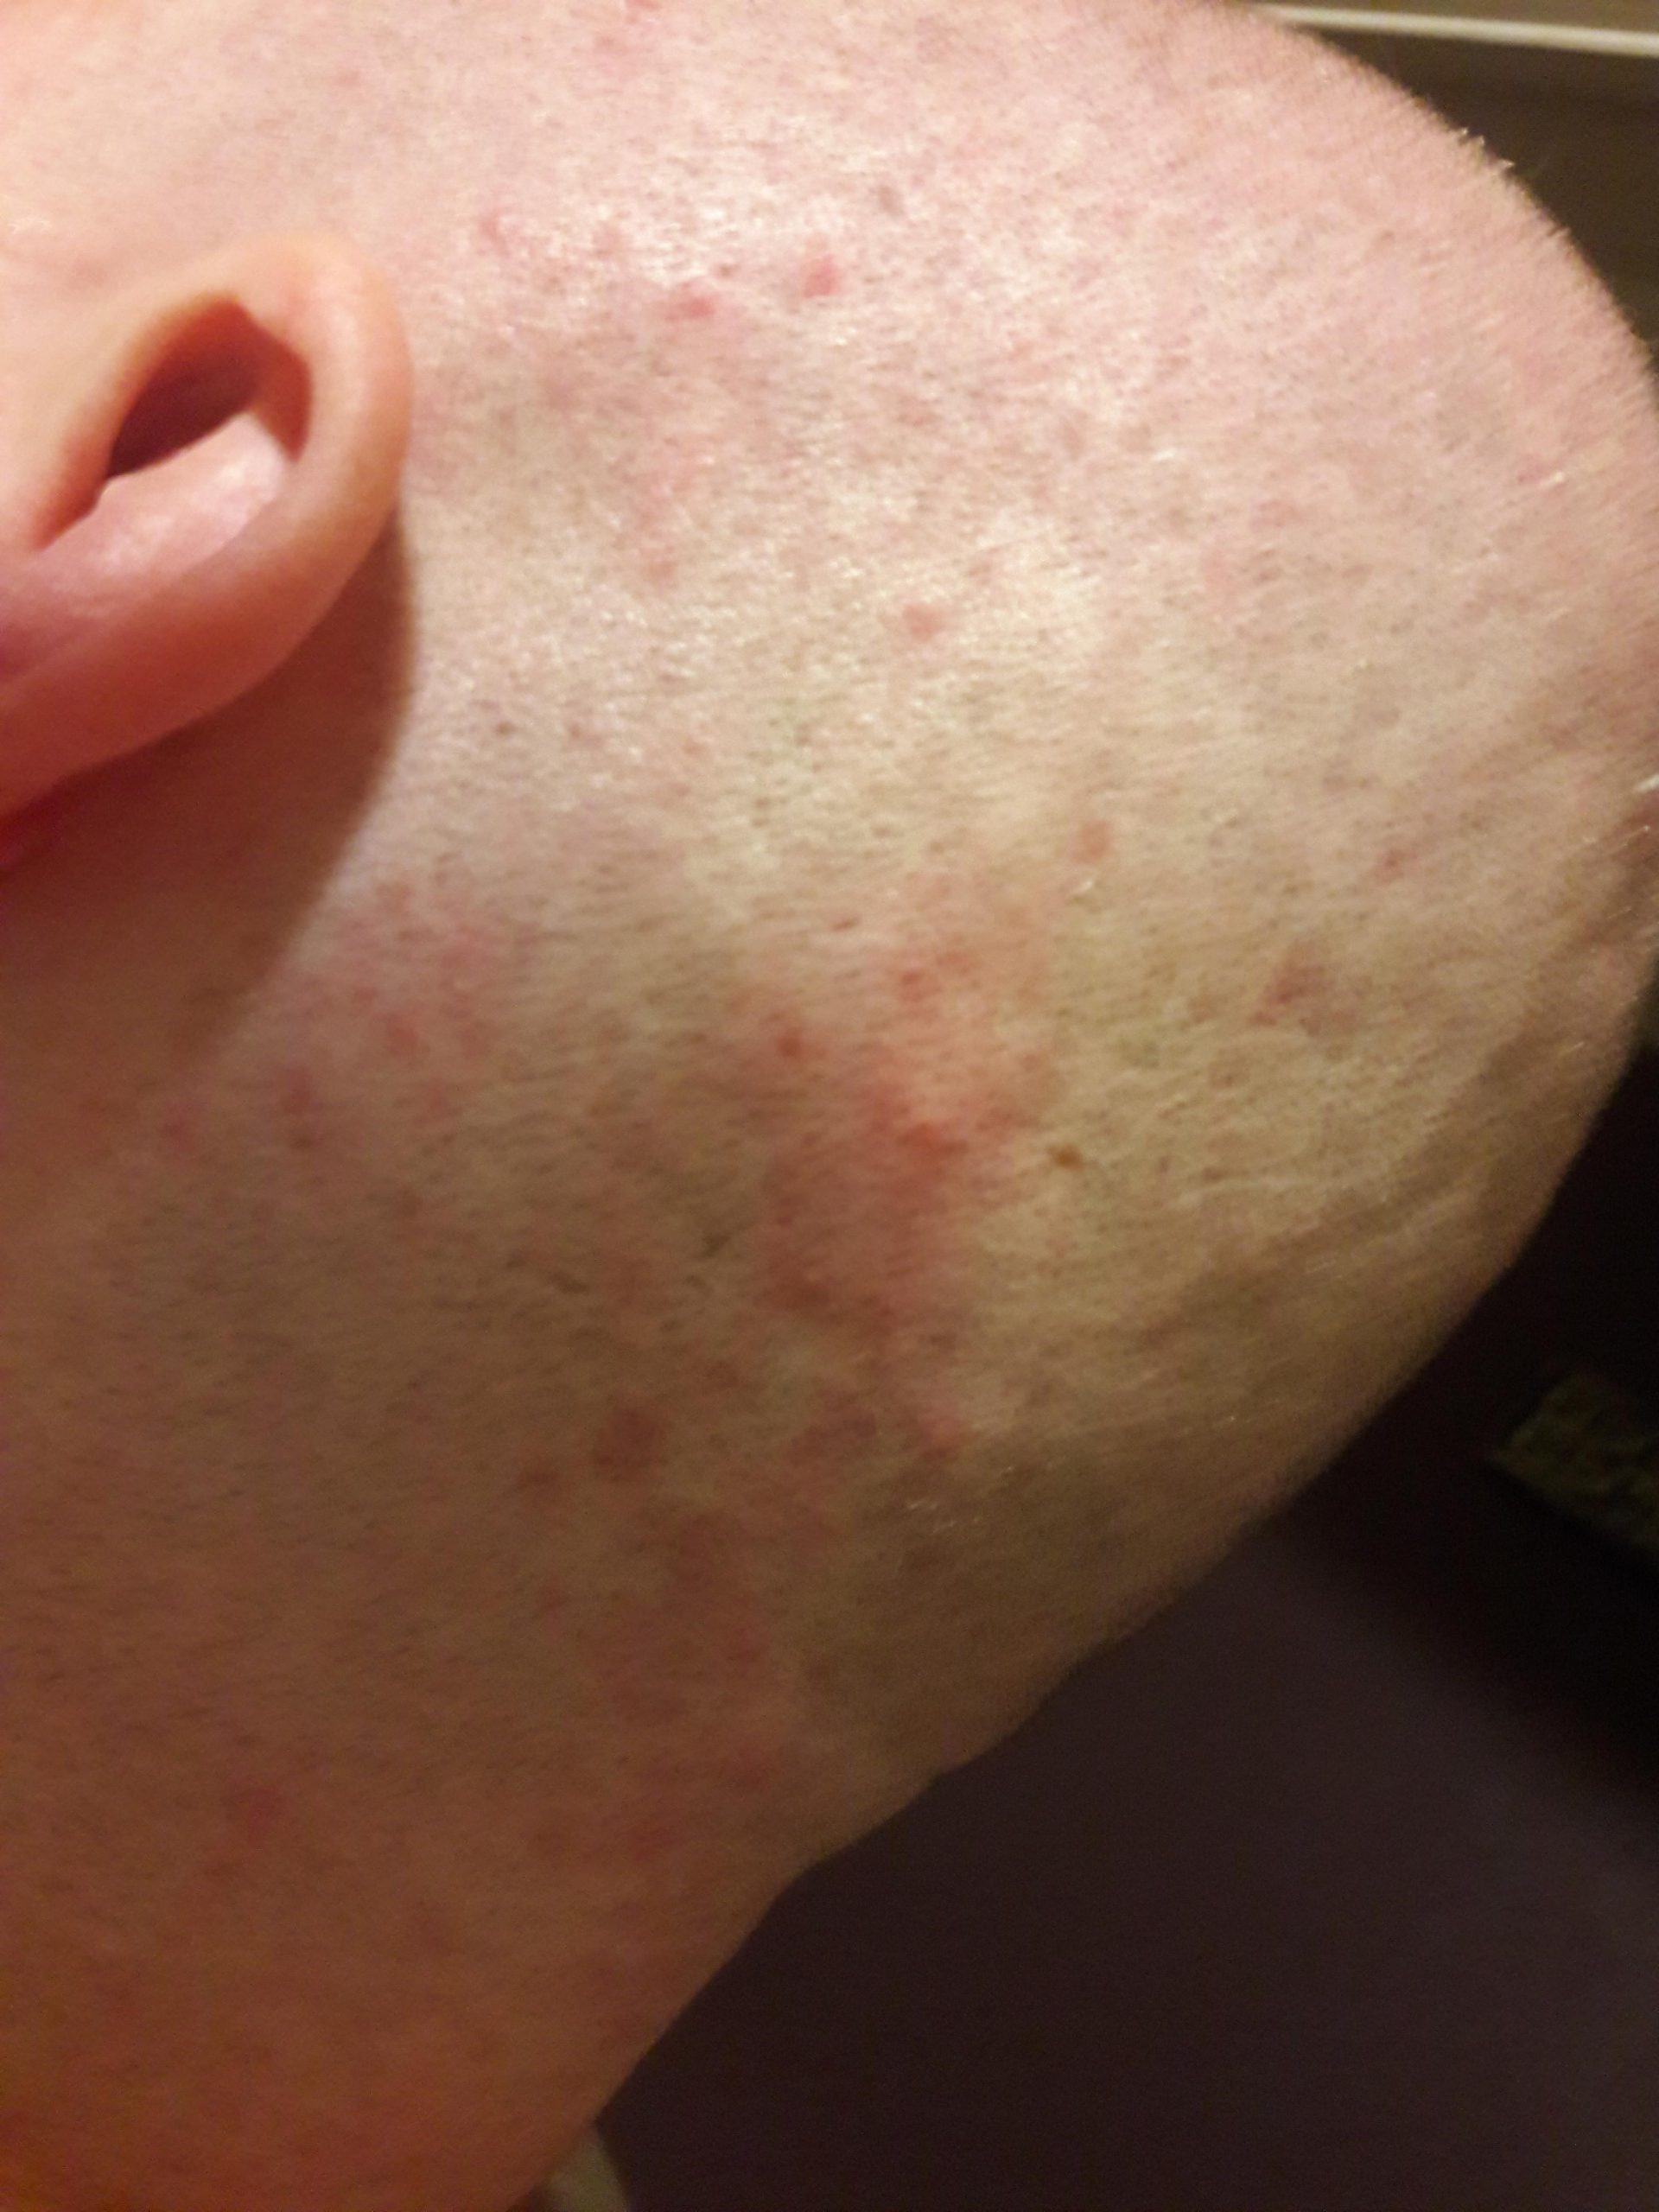 The rare side effect of abilify allergy: blistery rash ðâ¹ð¤¤ My husband ...